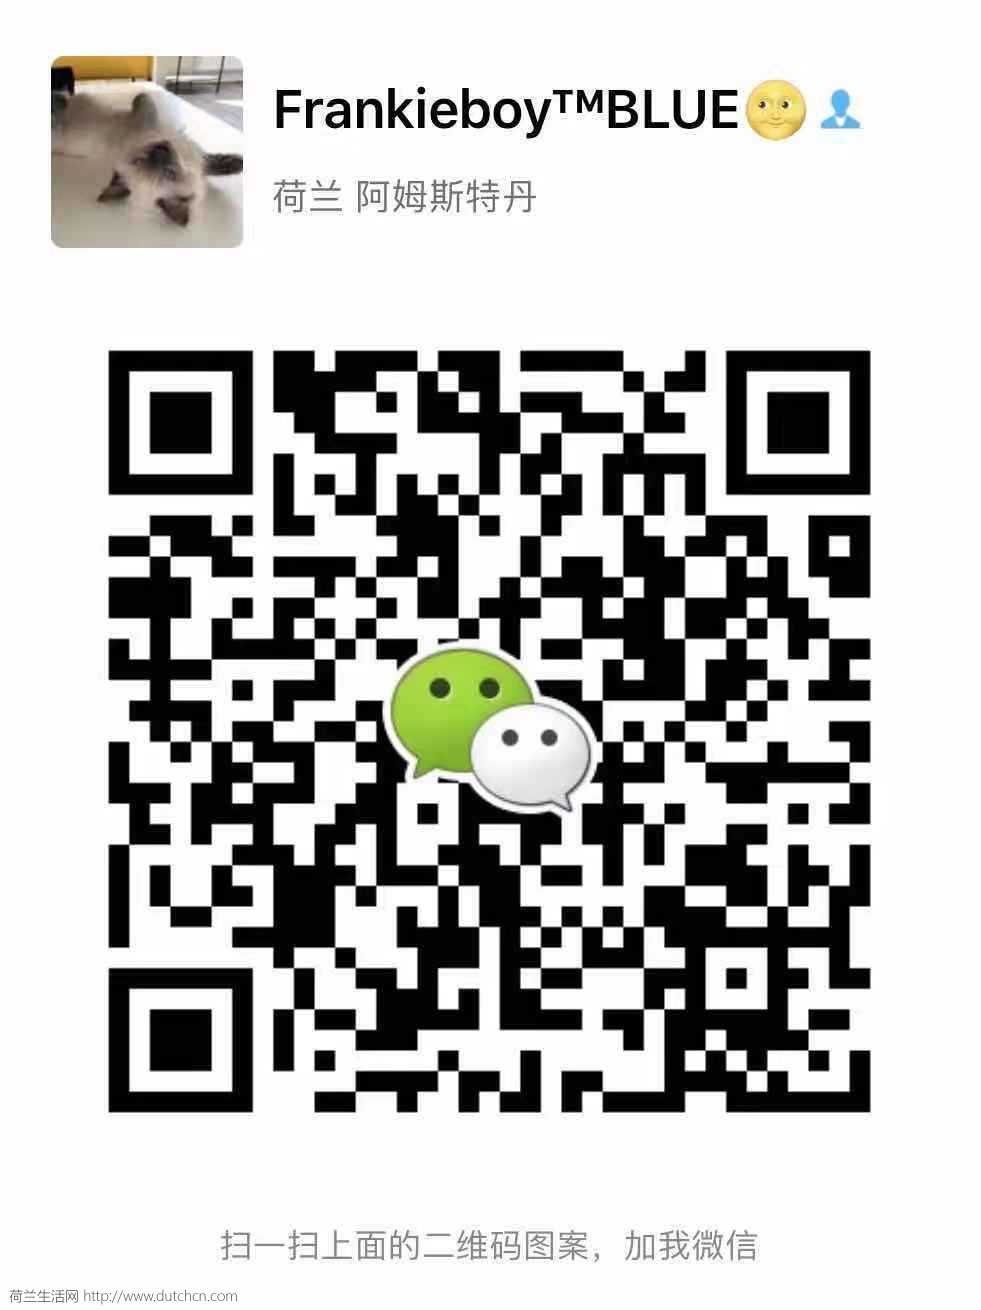 WeChat Image_20181022105559.jpg